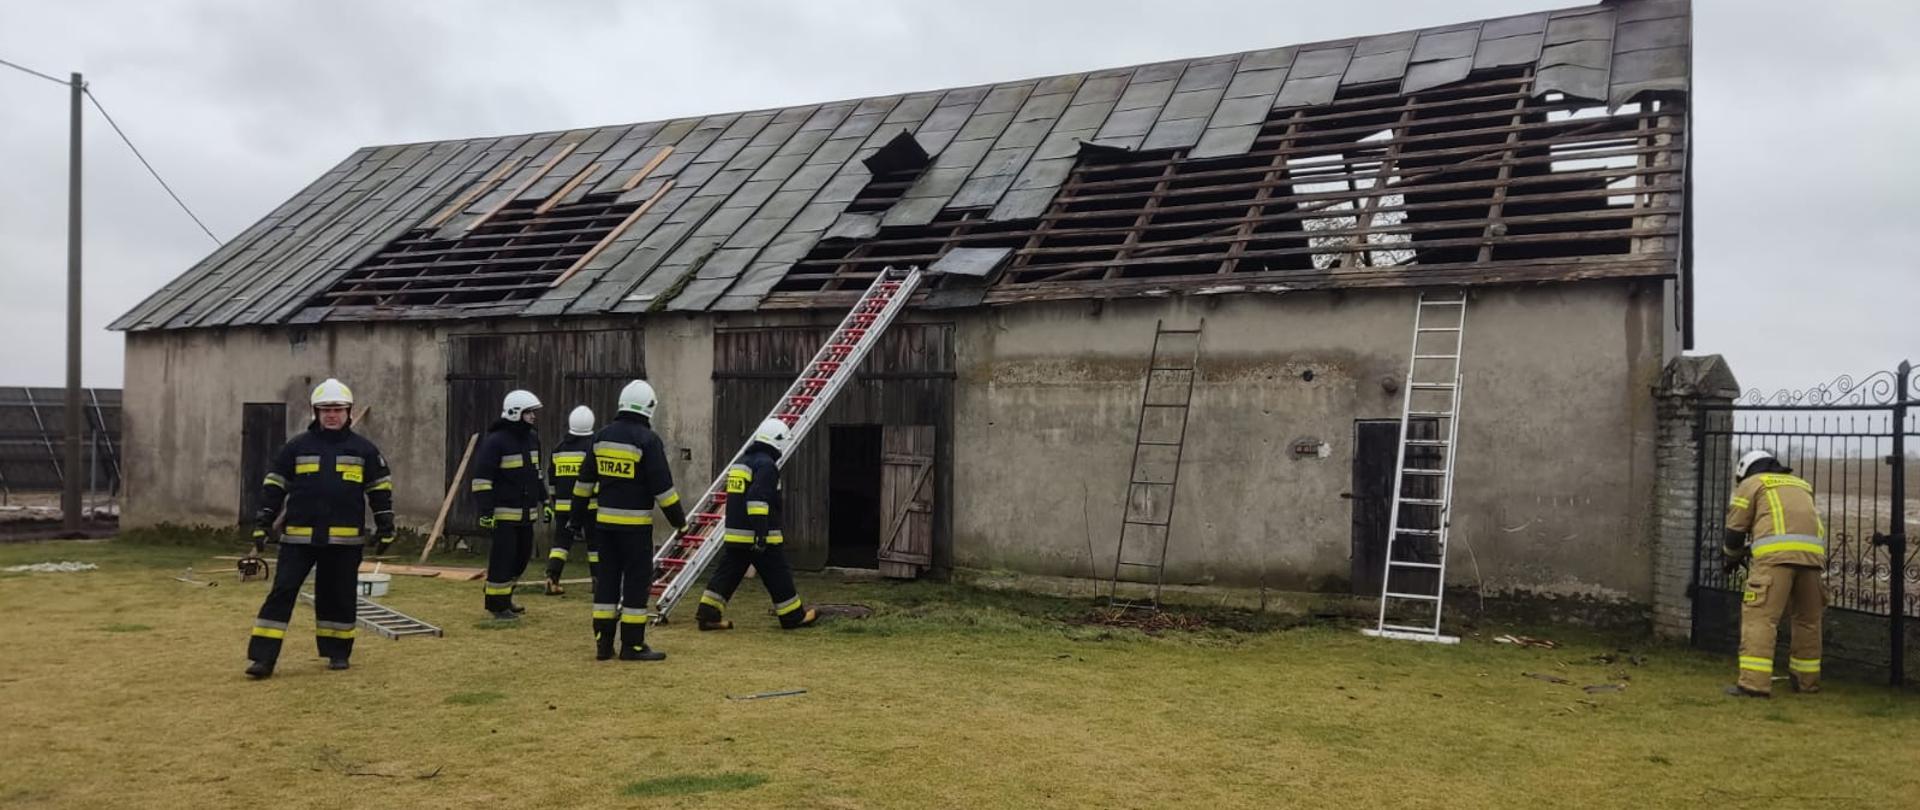 Zdjęcie przedstawia budynek gospodarczy z częściowo zerwanym dachem, oraz strażaków z drabinami pożarniczymi w trakcie zabezpieczania dachu przed całkowitym zerwaniem